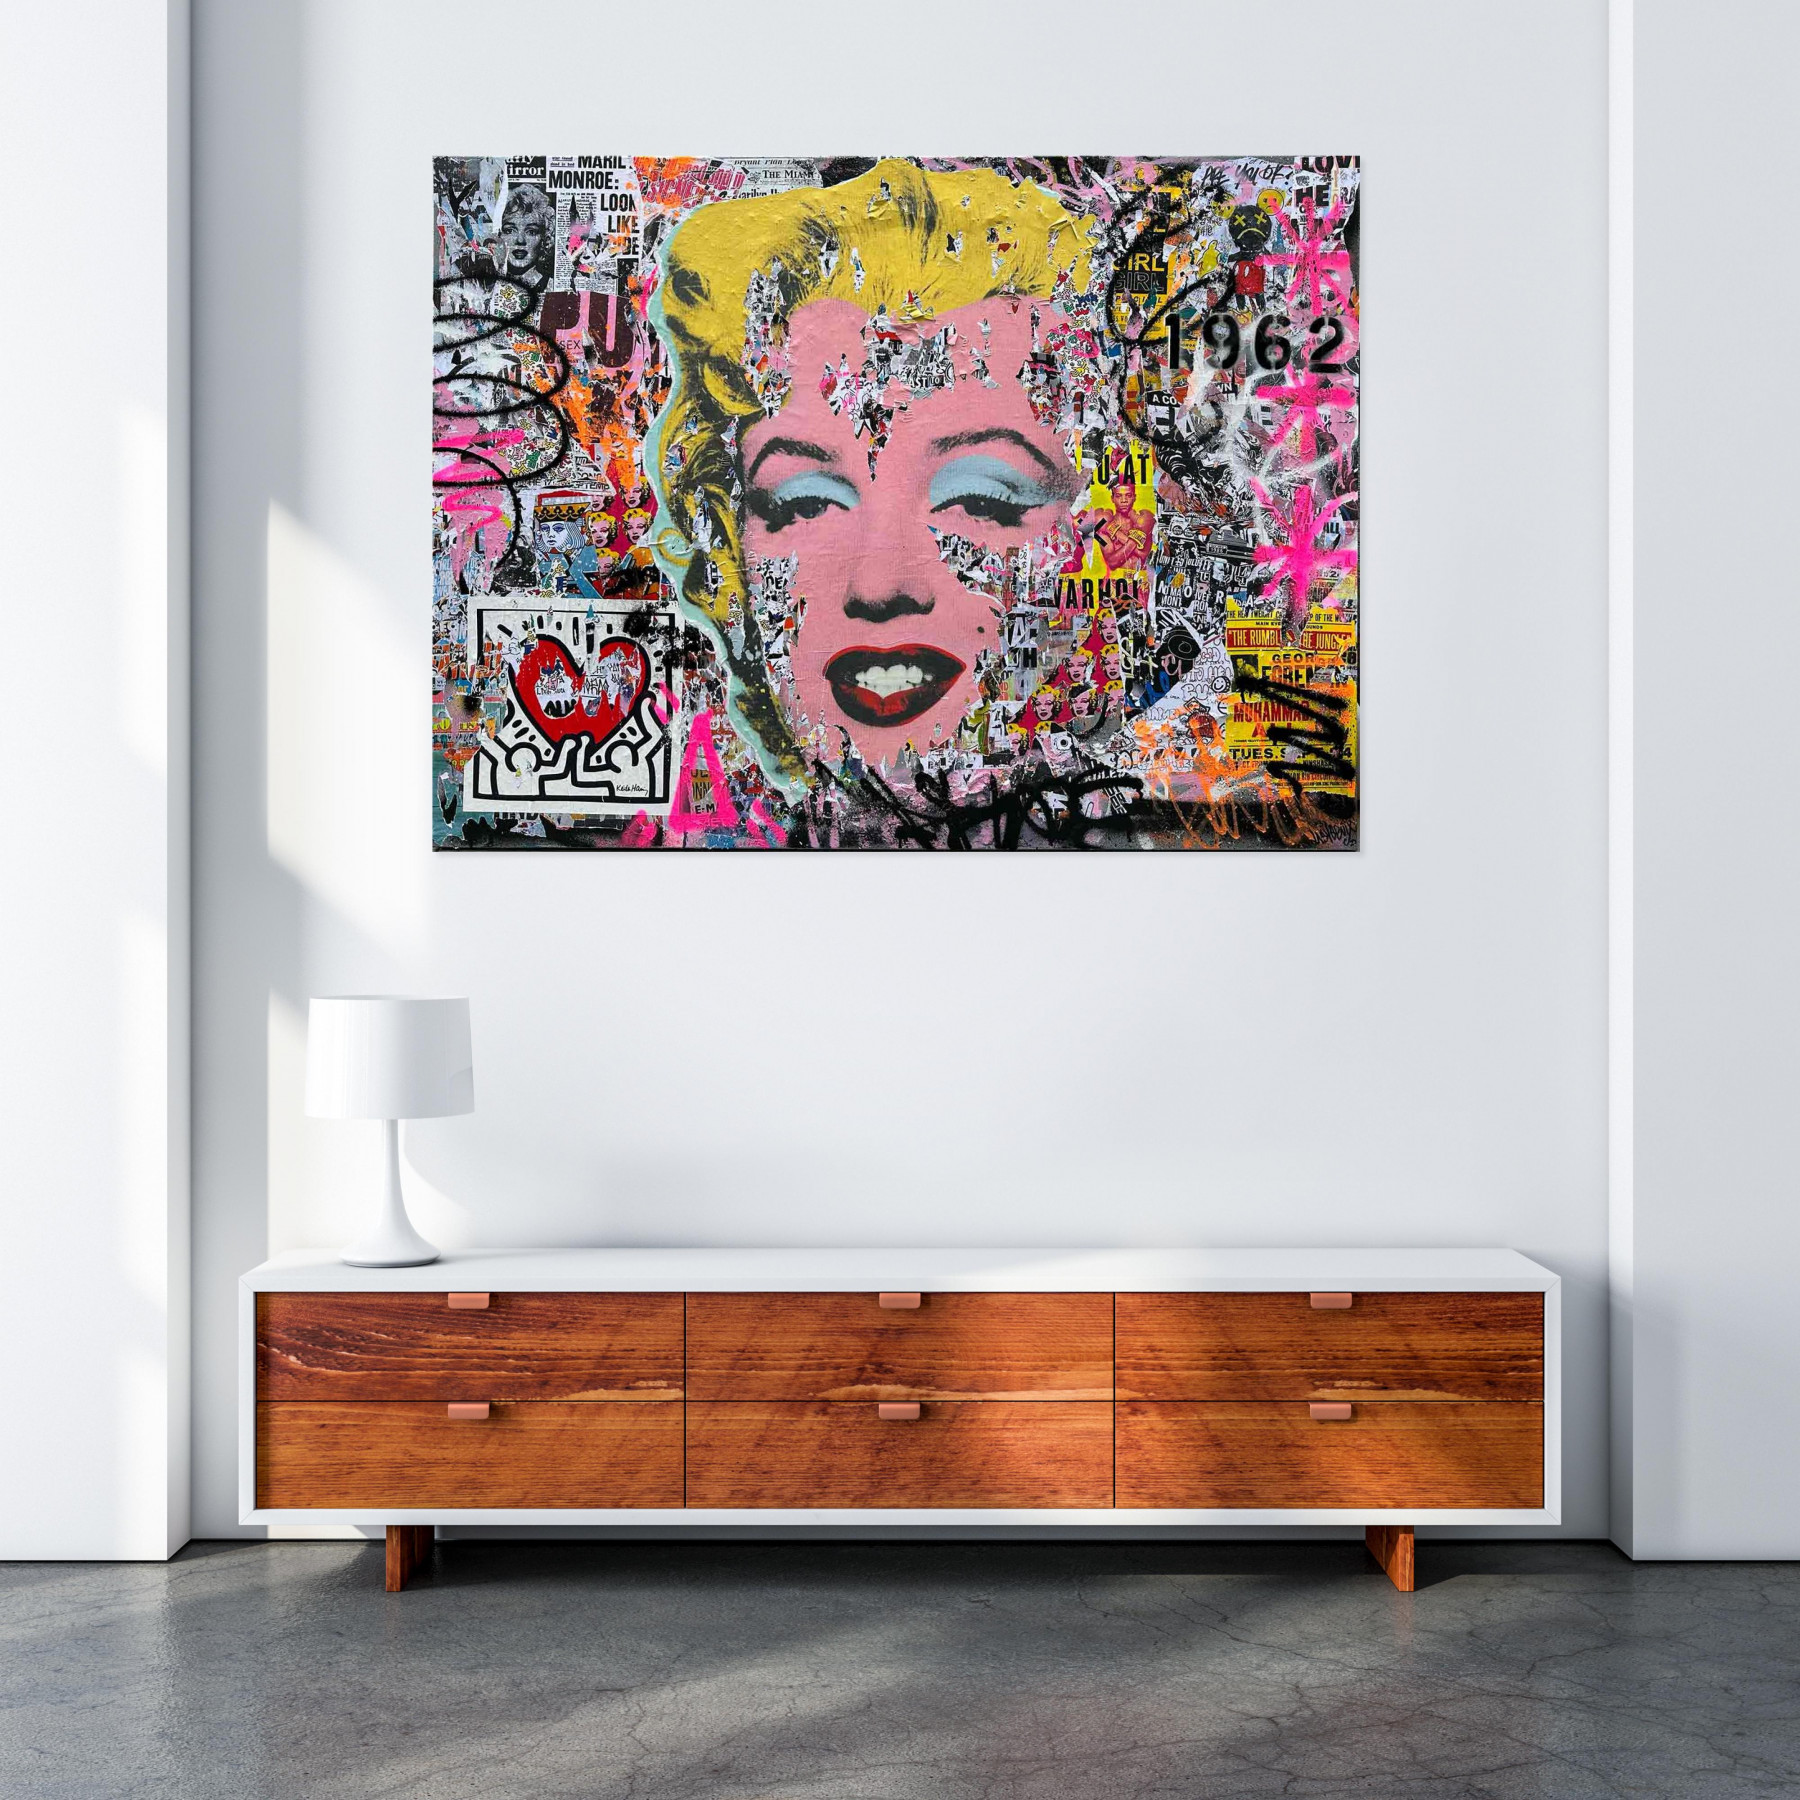 Lasveguix, Warhol Pop Girl 1962, peinture - Galerie de vente et d’achat d’art contemporain en ligne Artalistic